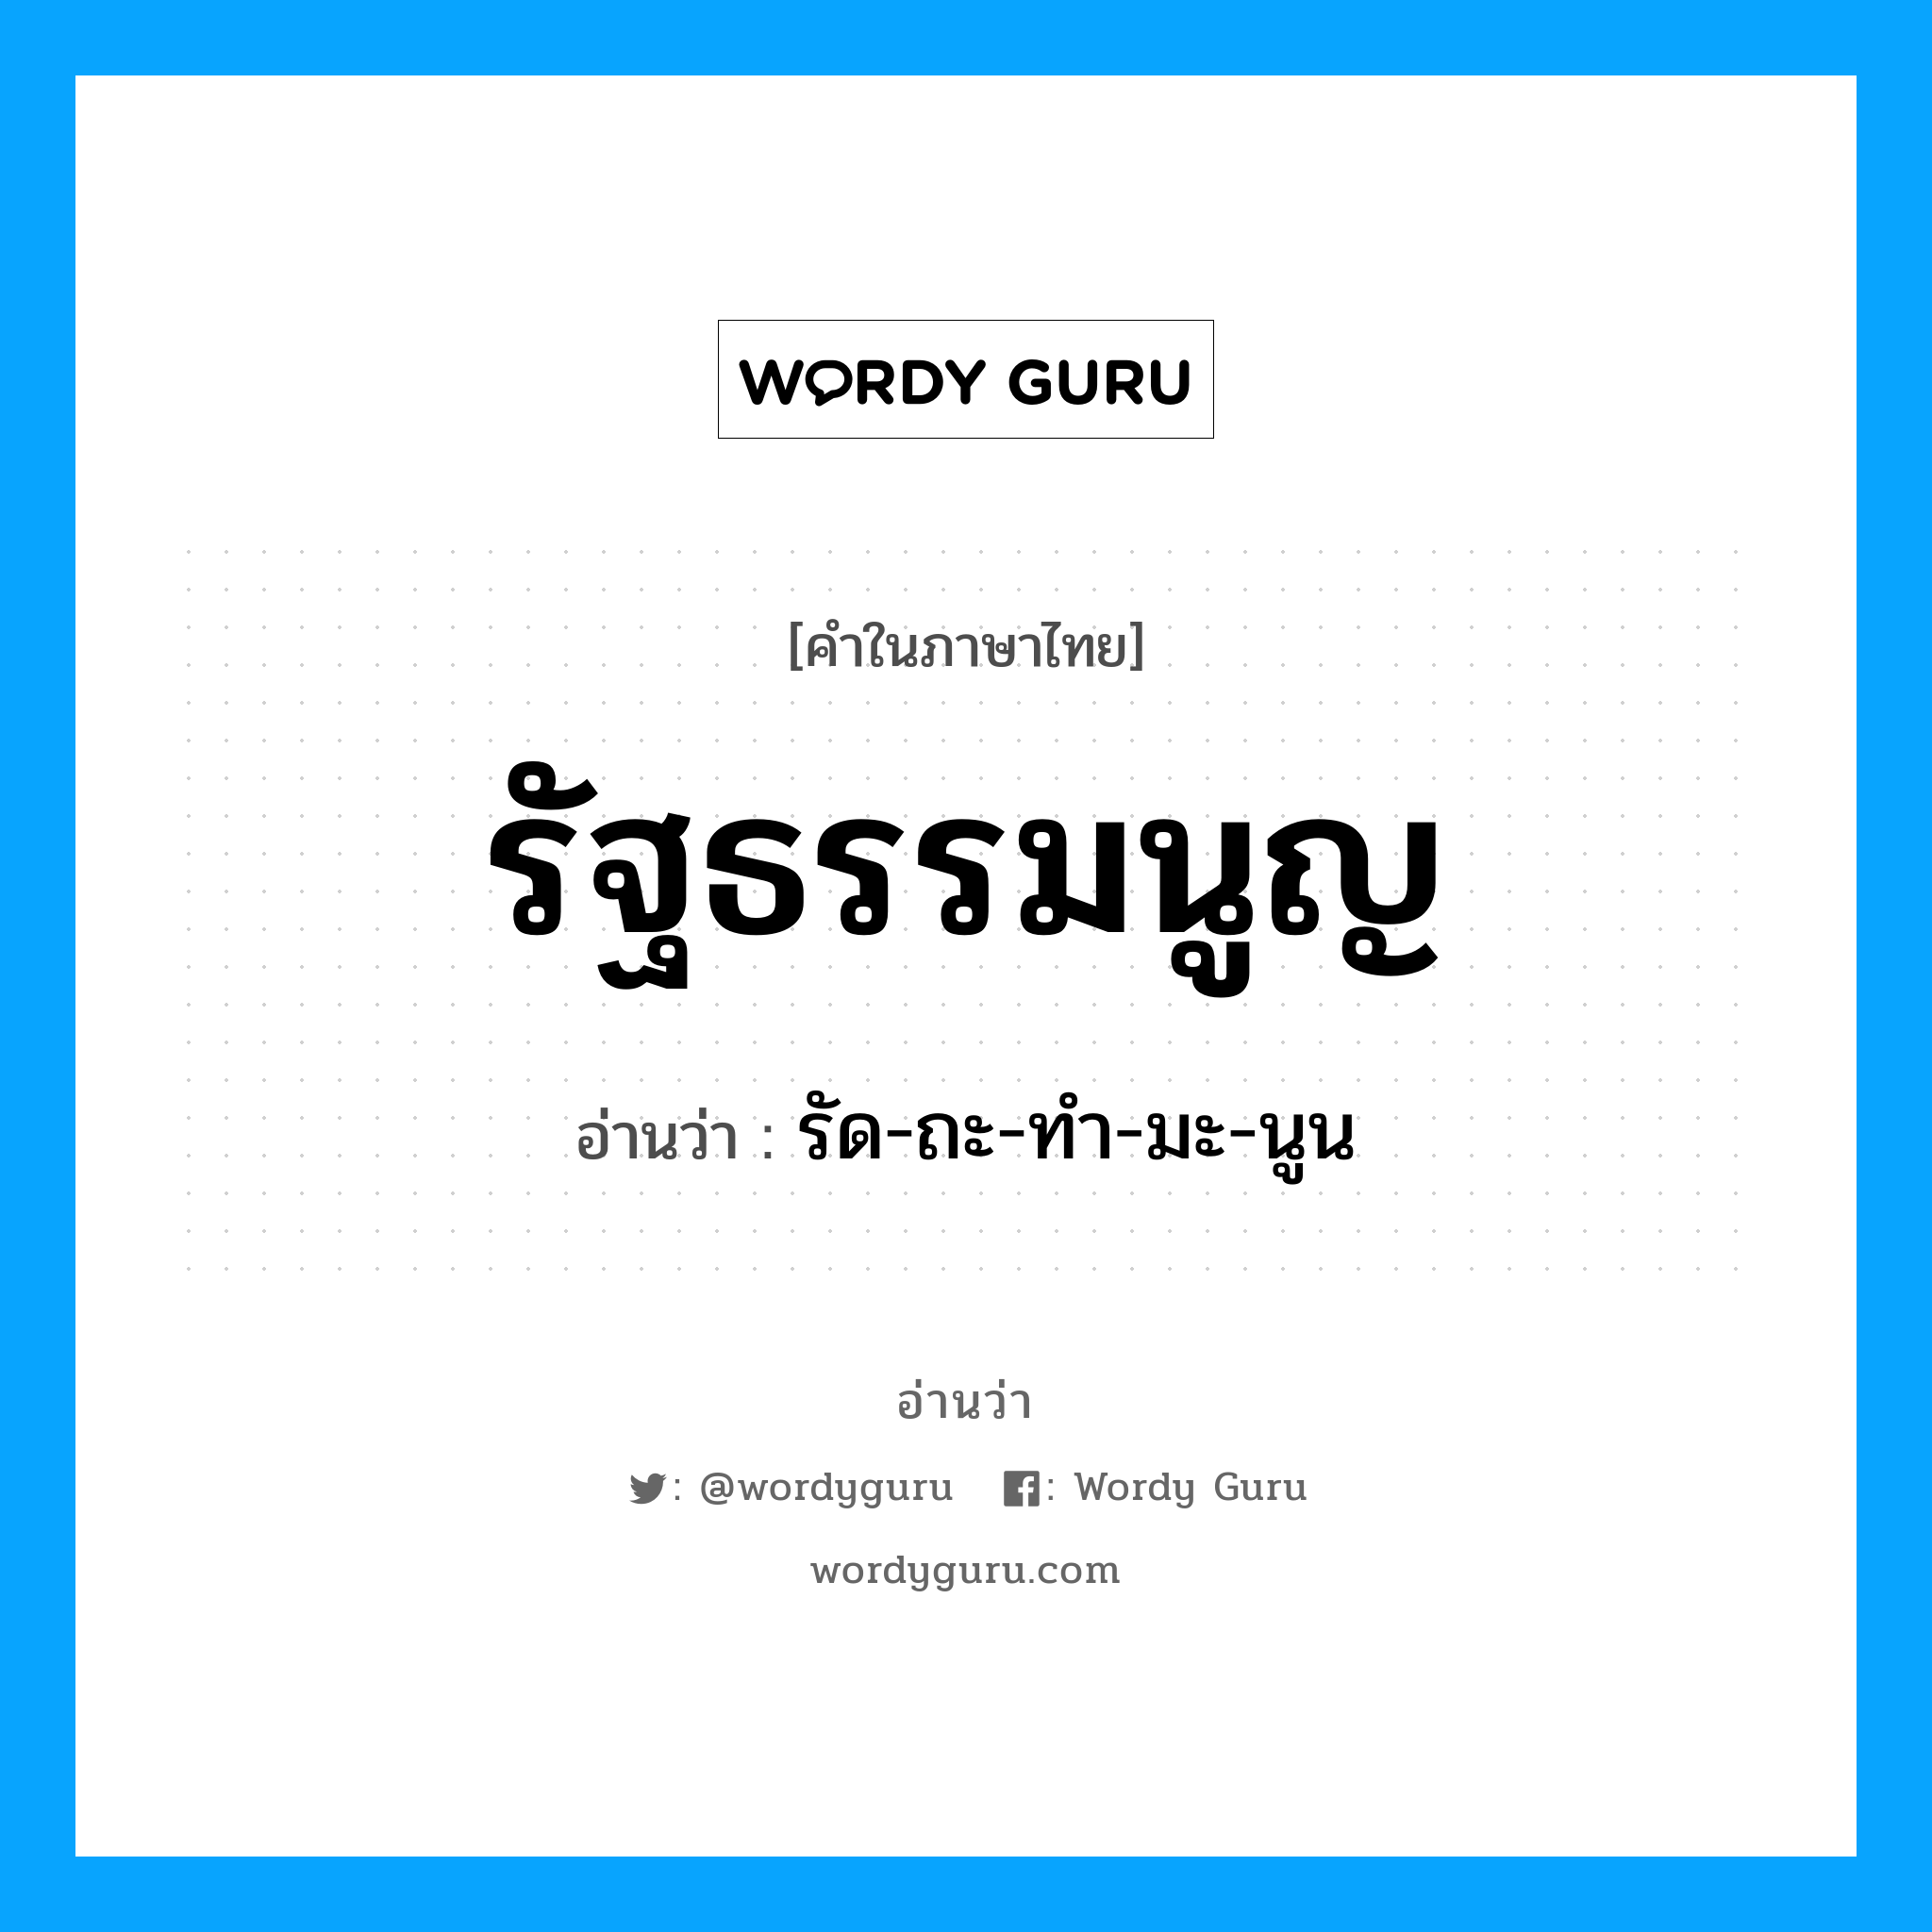 รัด-ถะ-ทำ-มะ-นูน เป็นคำอ่านของคำไหน?, คำในภาษาไทย รัด-ถะ-ทำ-มะ-นูน อ่านว่า รัฐธรรมนูญ